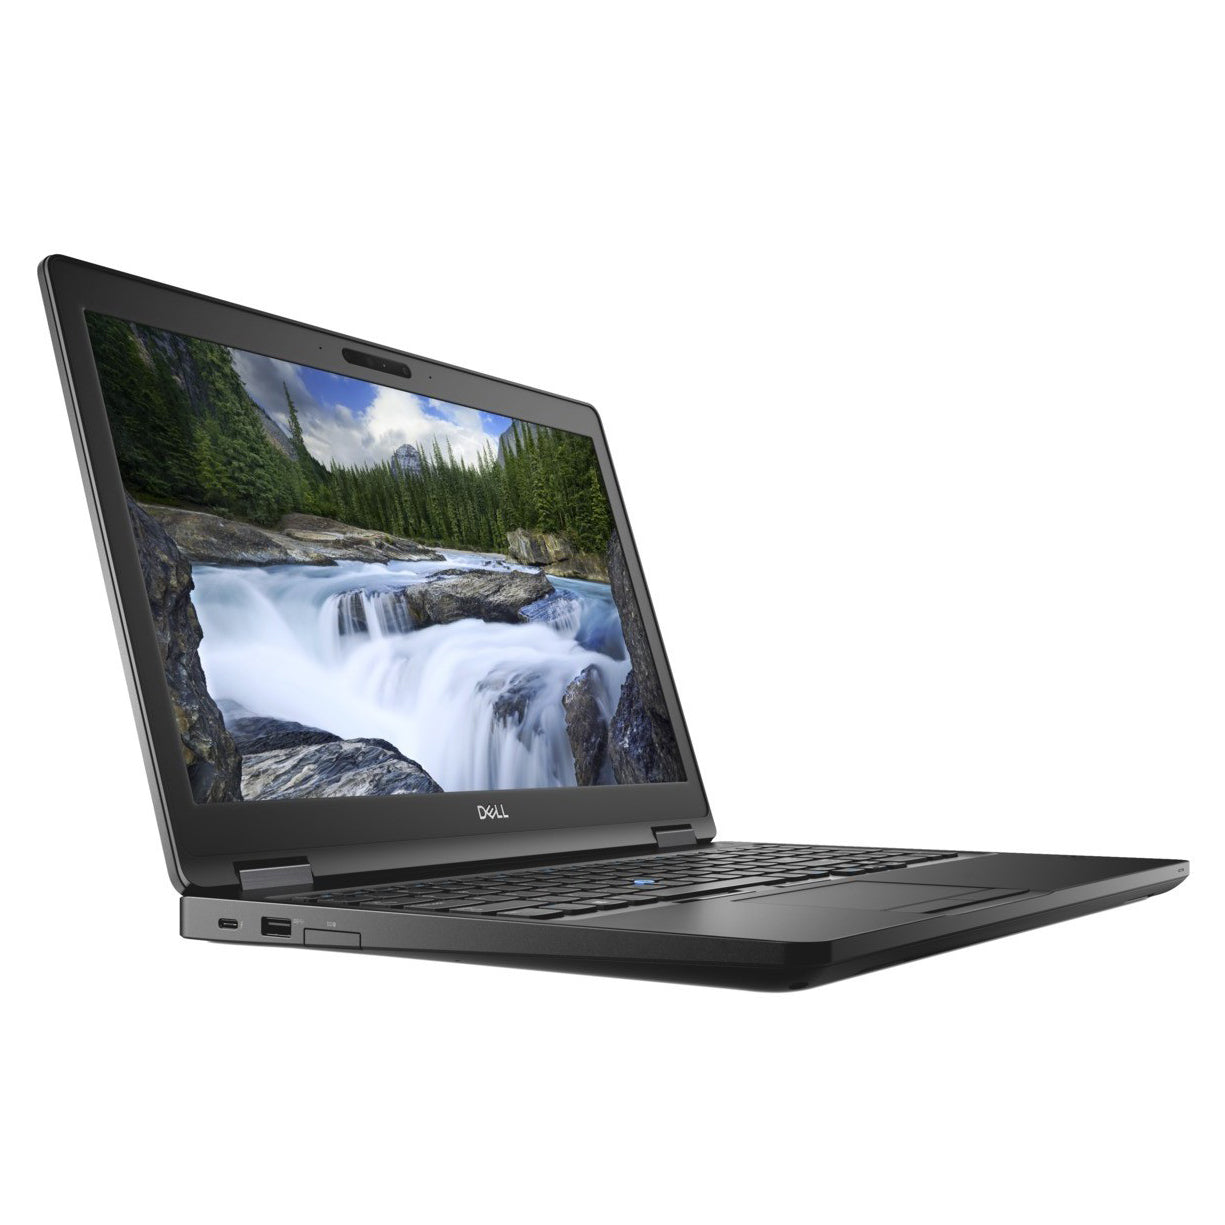 Dell Latitude 5590 Core i7-8650u VGA Nvidia MX130 2GB 15.6" Laptop Offers (Open Box)